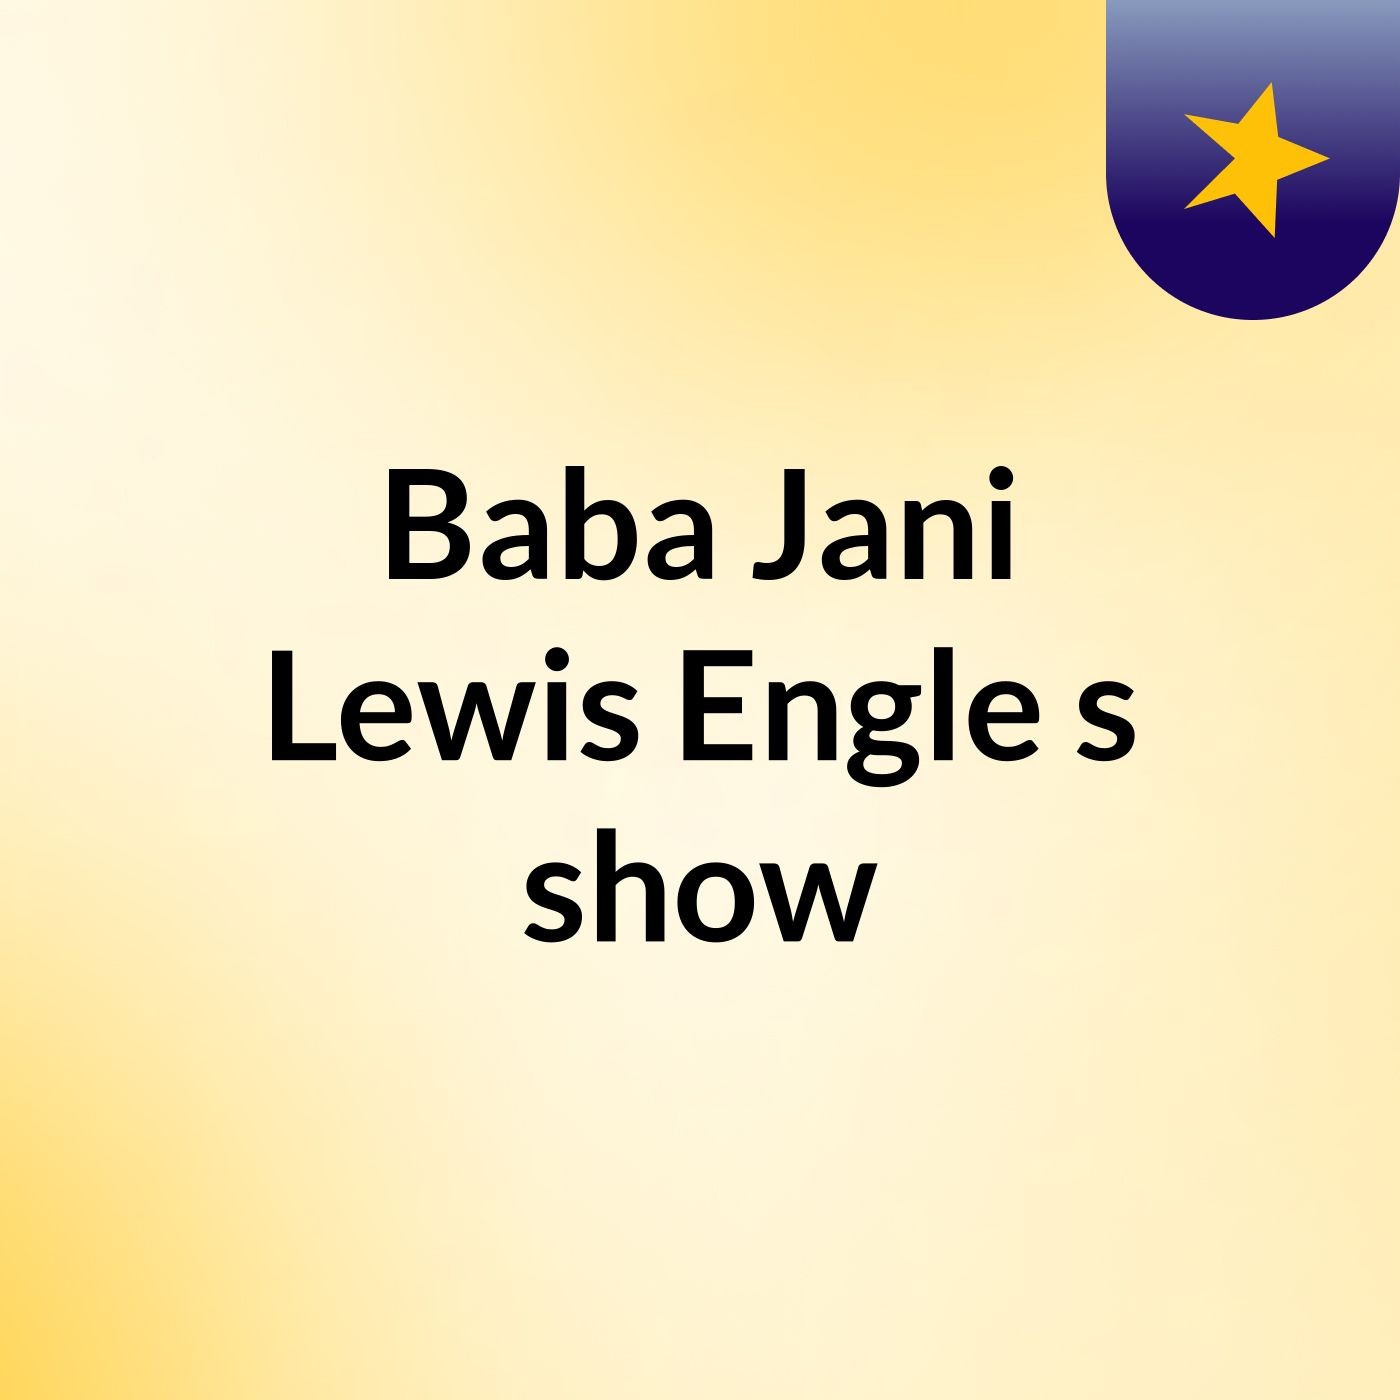 Baba Jani, Lewis Engle's show